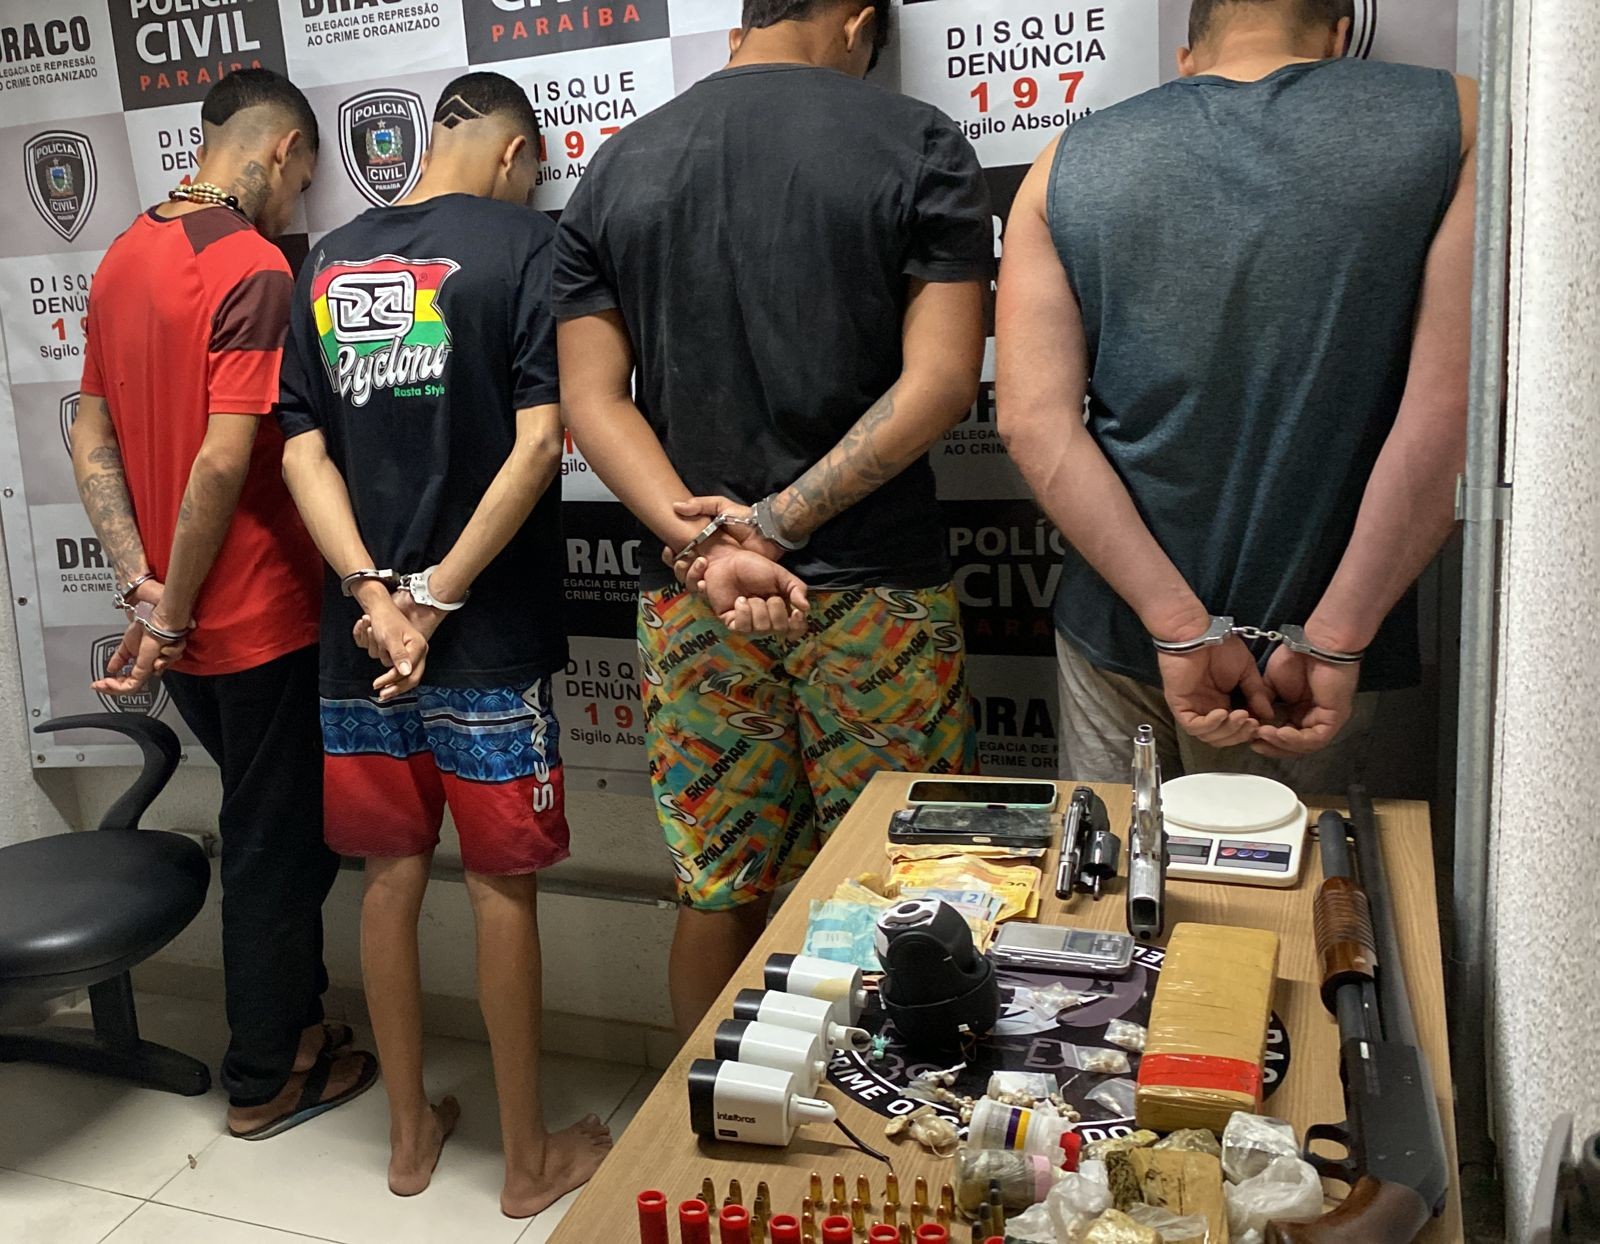 Operação prende homens suspeitos de de participação em facção criminosa em Cabedelo, PB